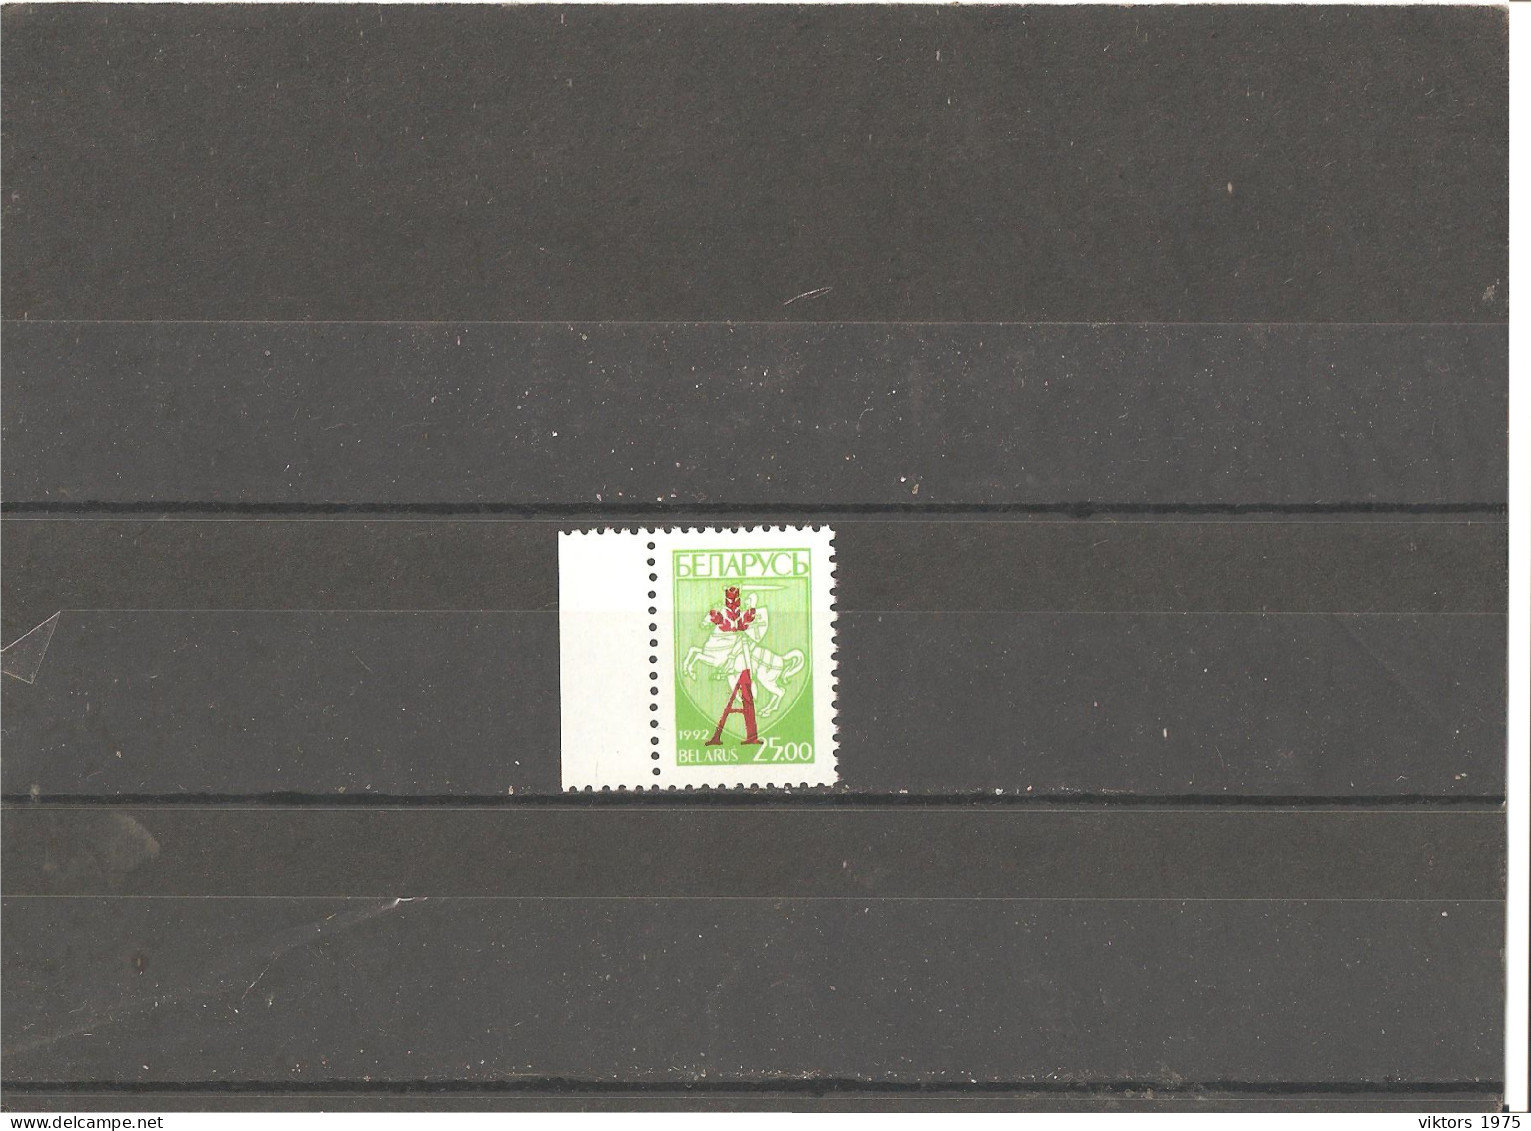 MNH Stamp Nr.121 In MICHEL Catalog - Belarus